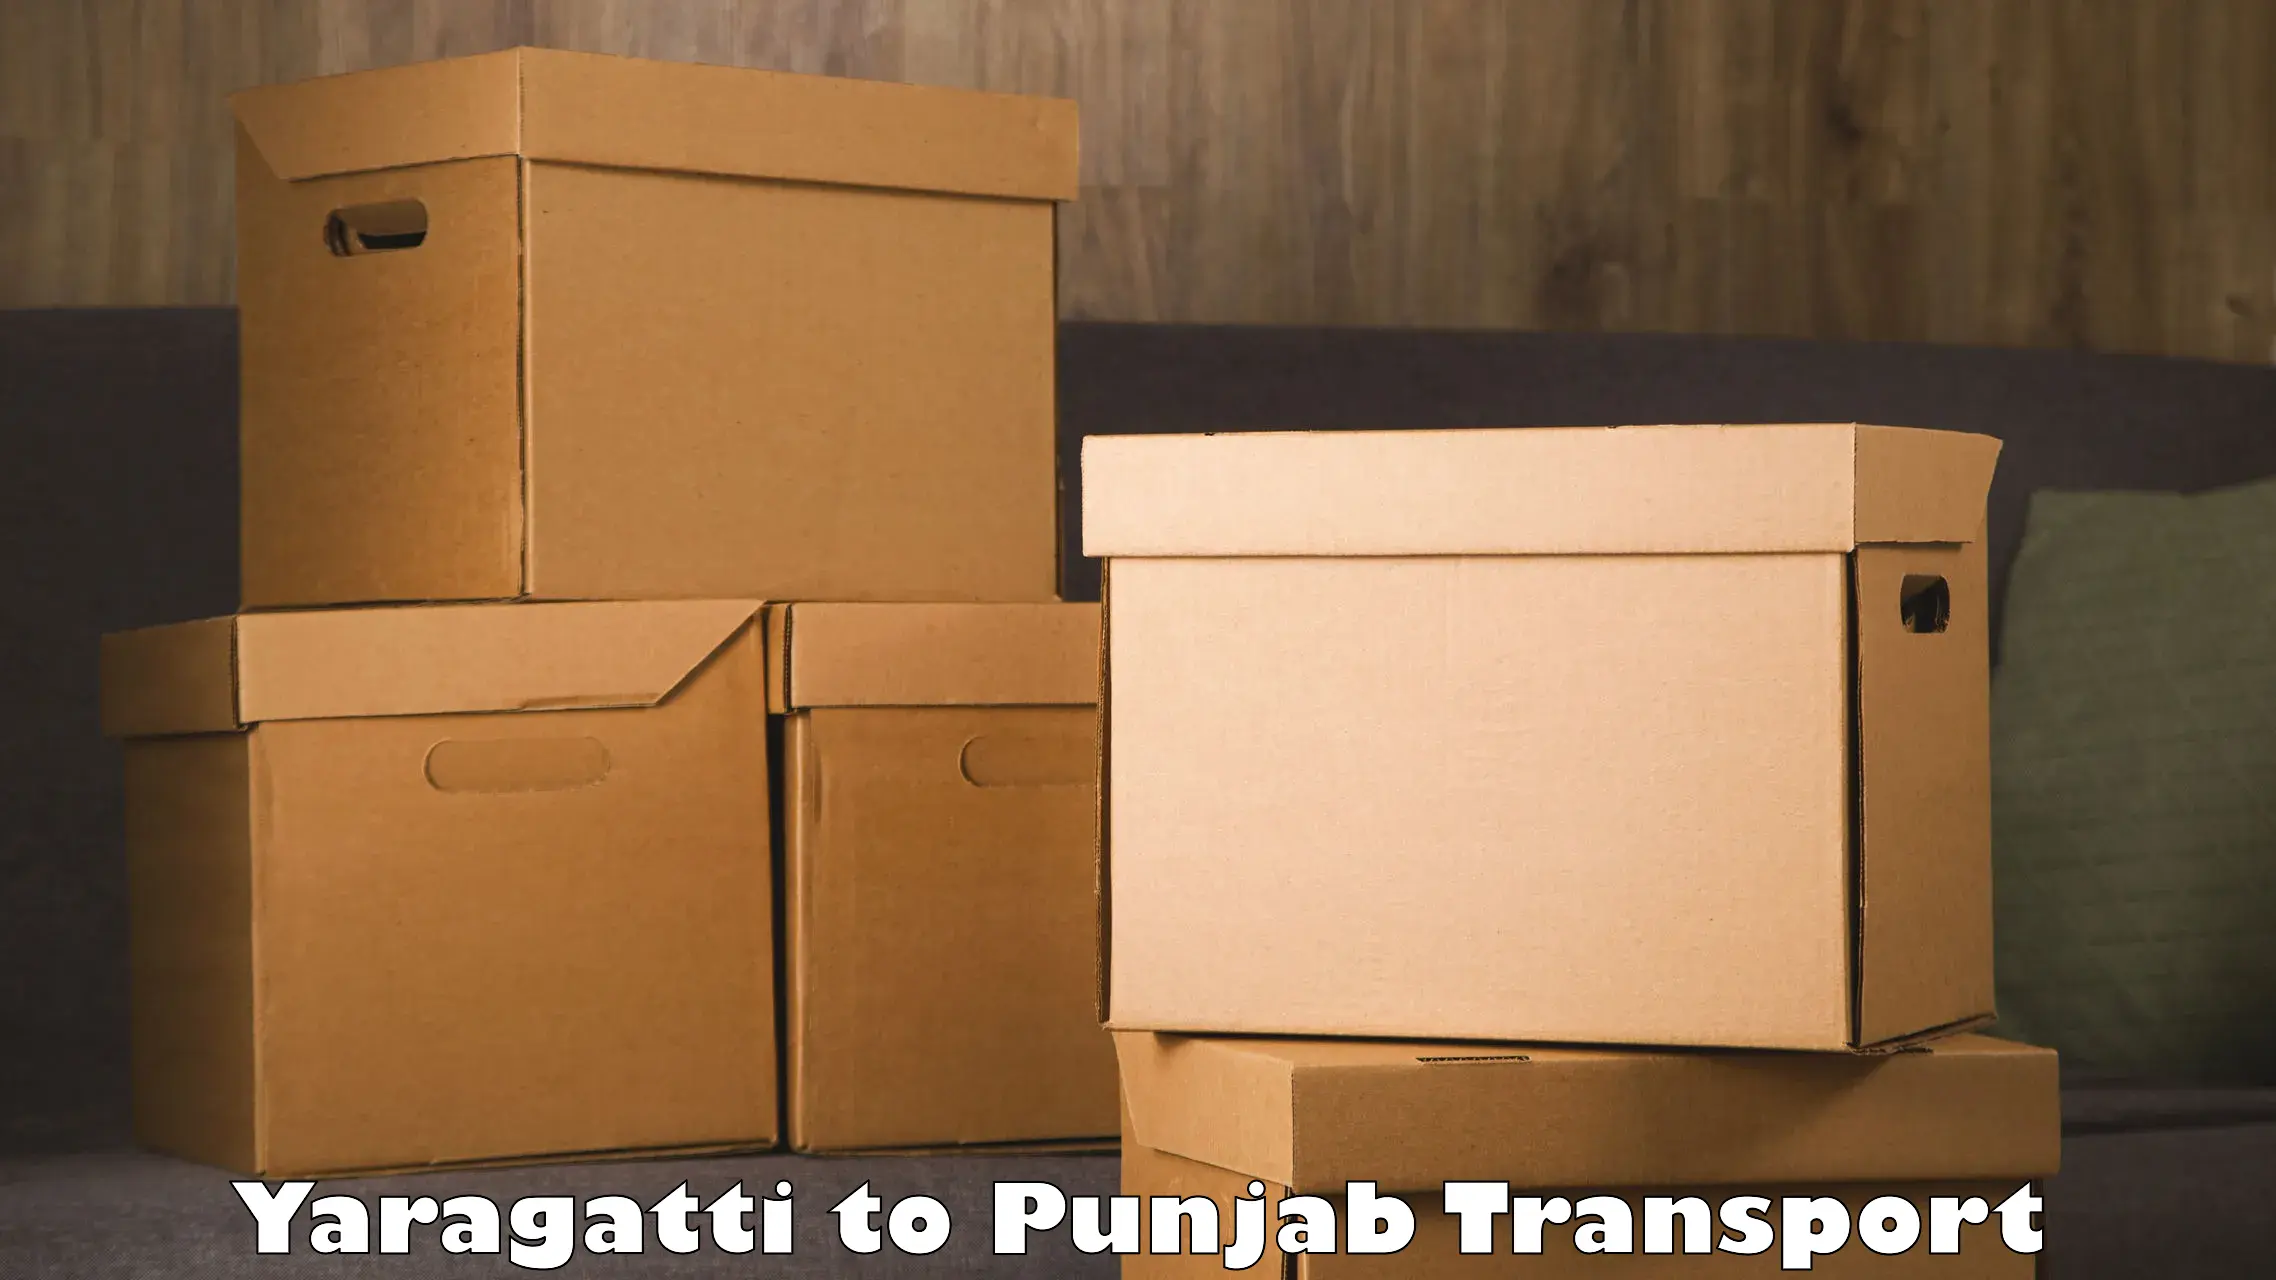 Delivery service Yaragatti to Rupnagar